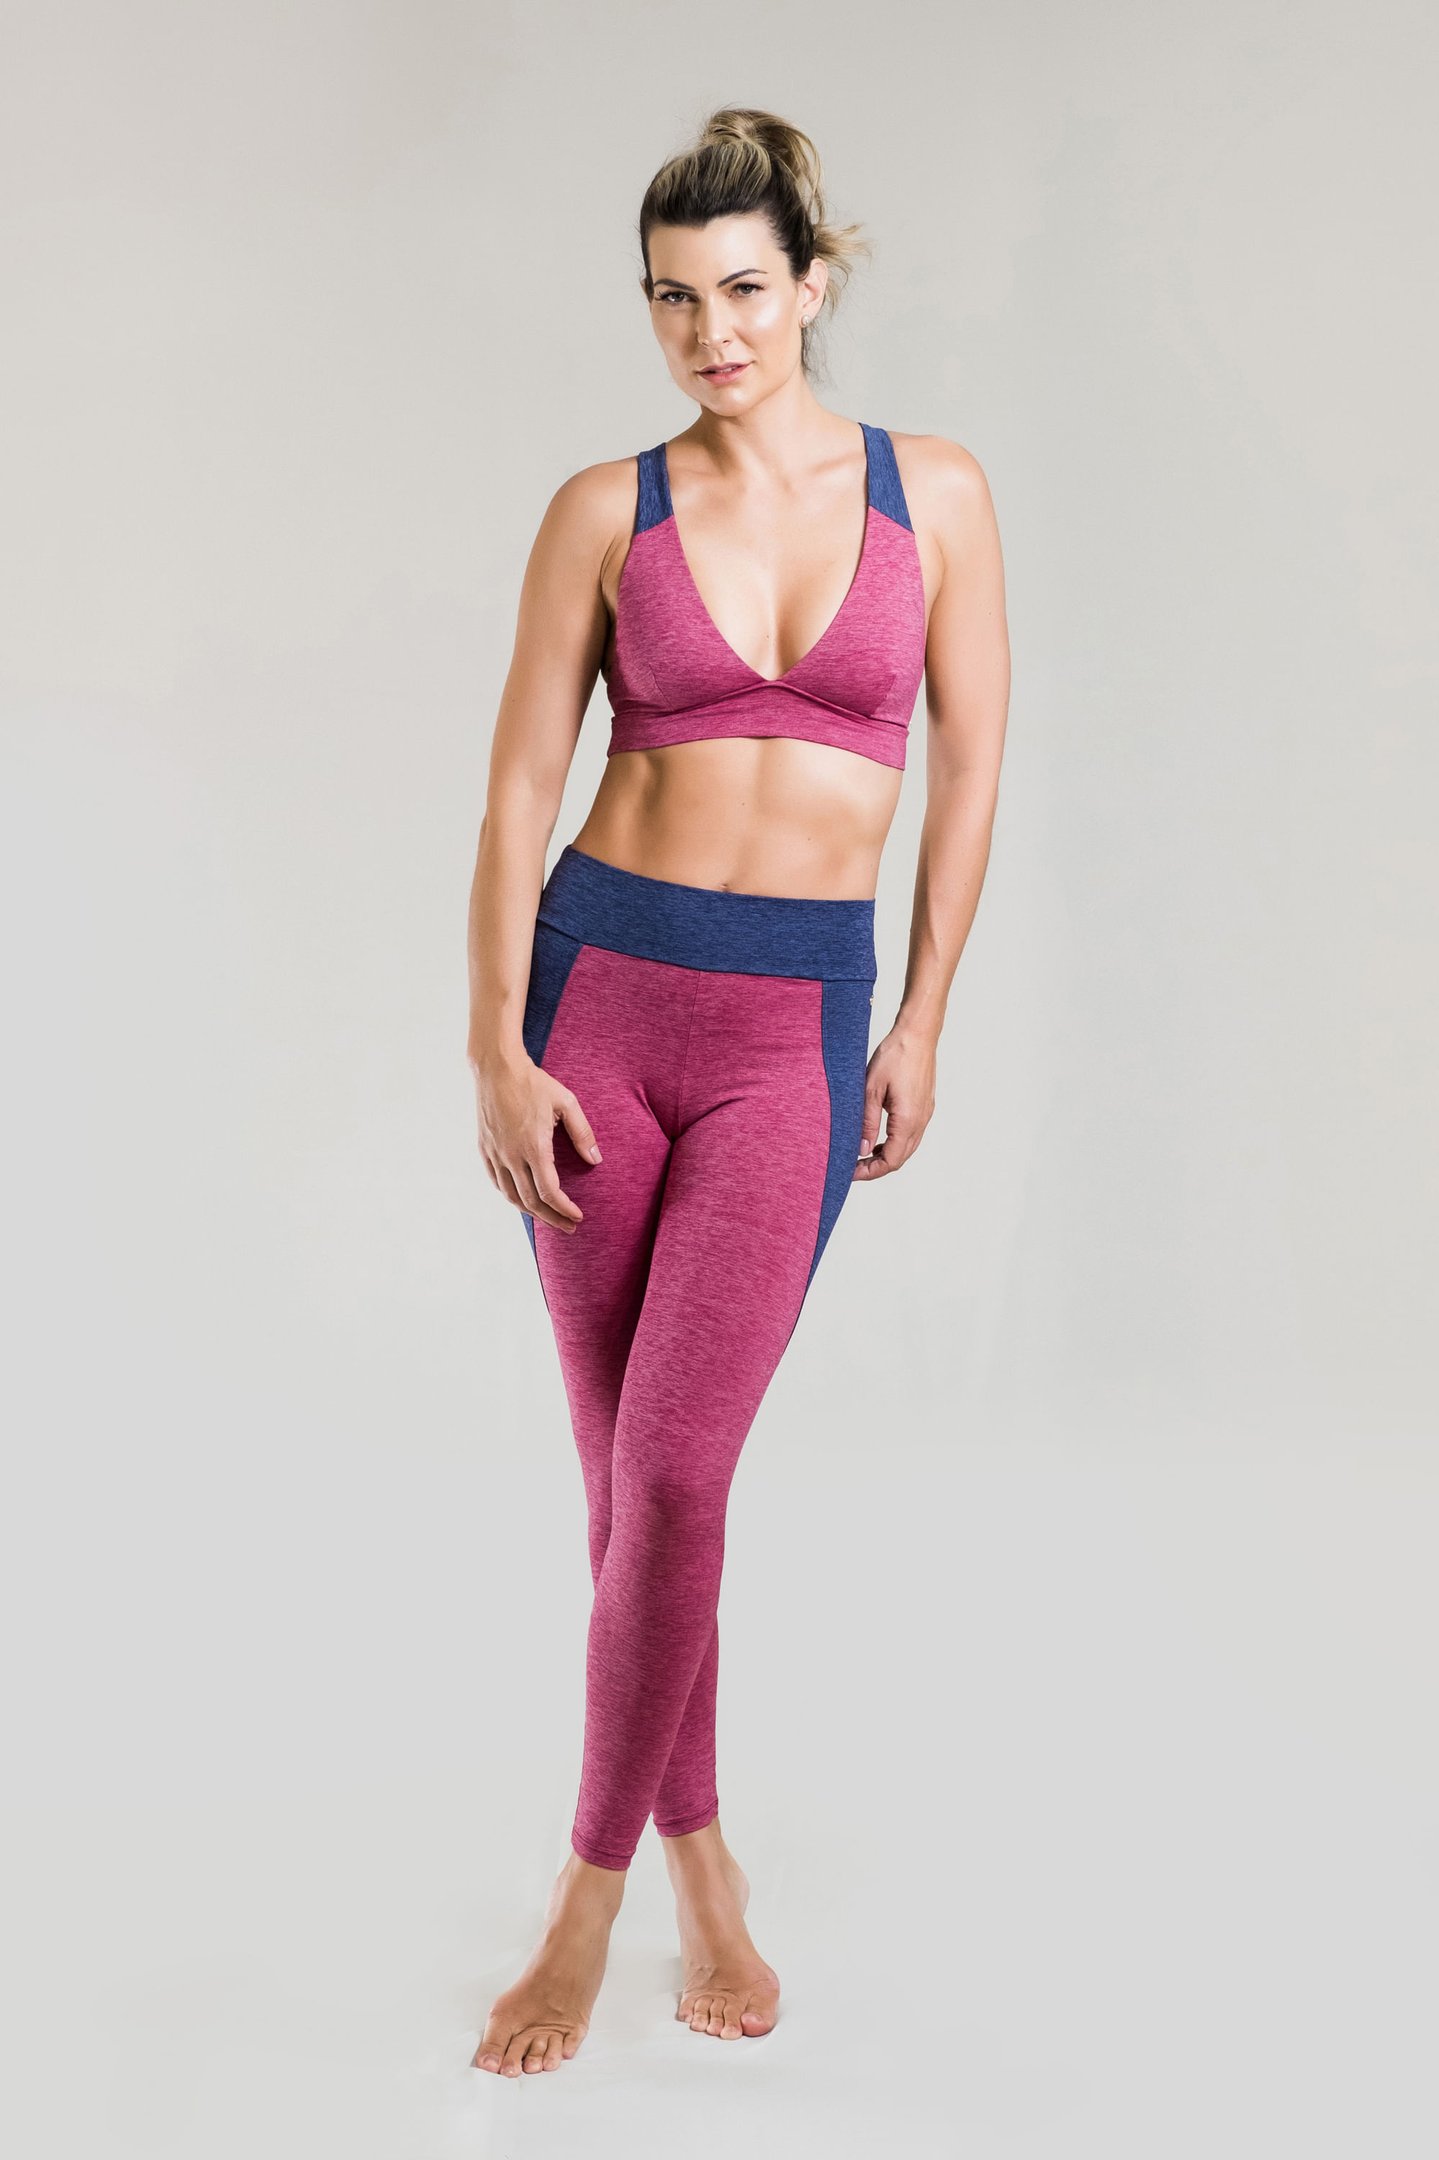 Calça legging fitness bicolor com tela nas laterais mescla com